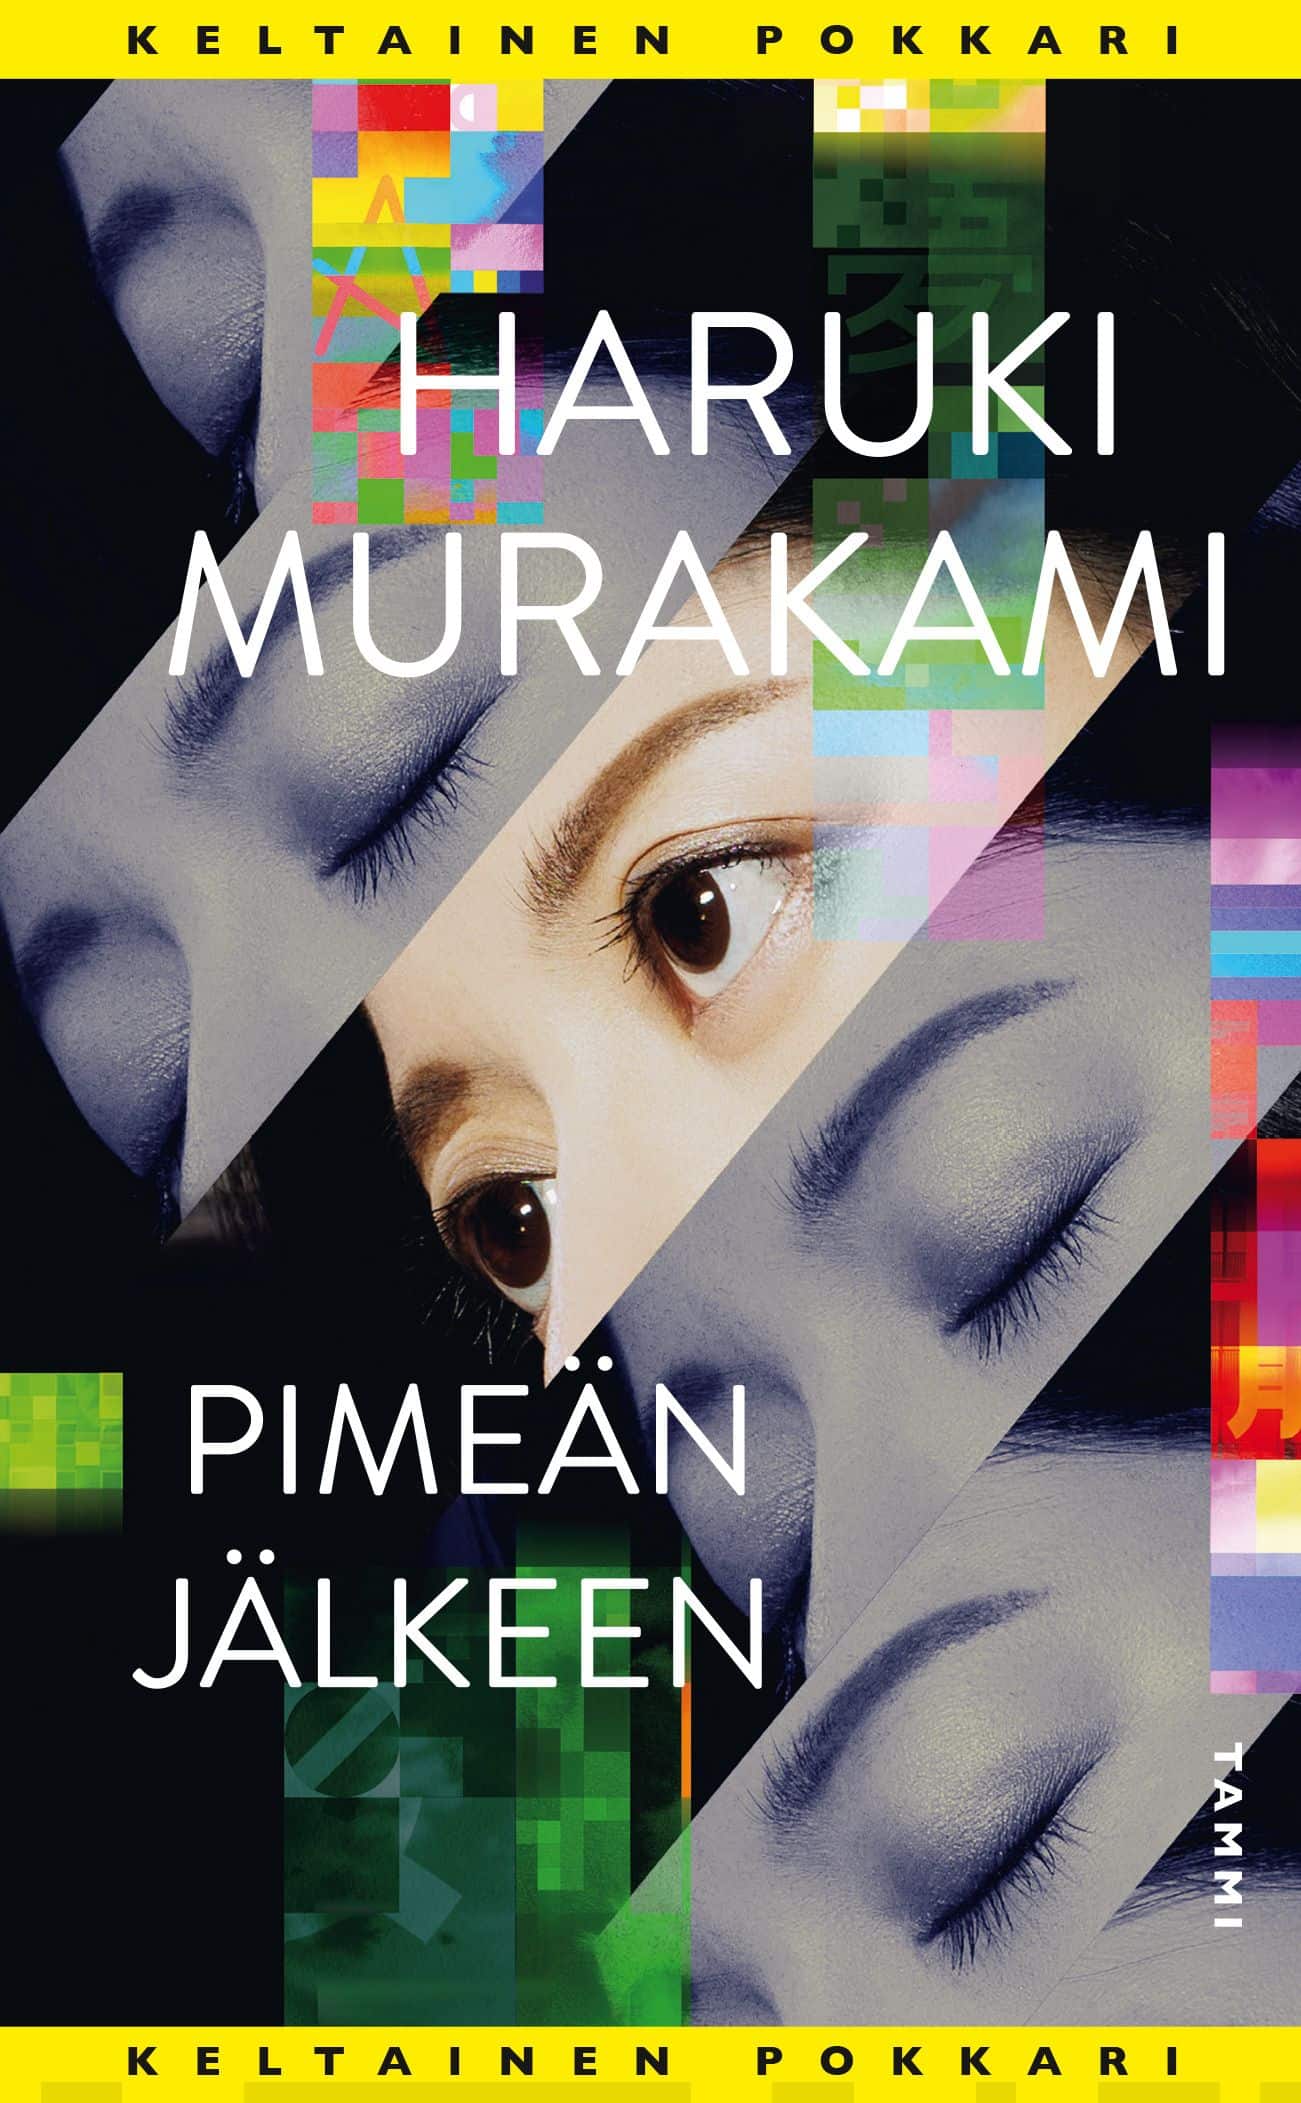 Haruki Murakami: Pimeän jälkeen (Finnish language, 2020)